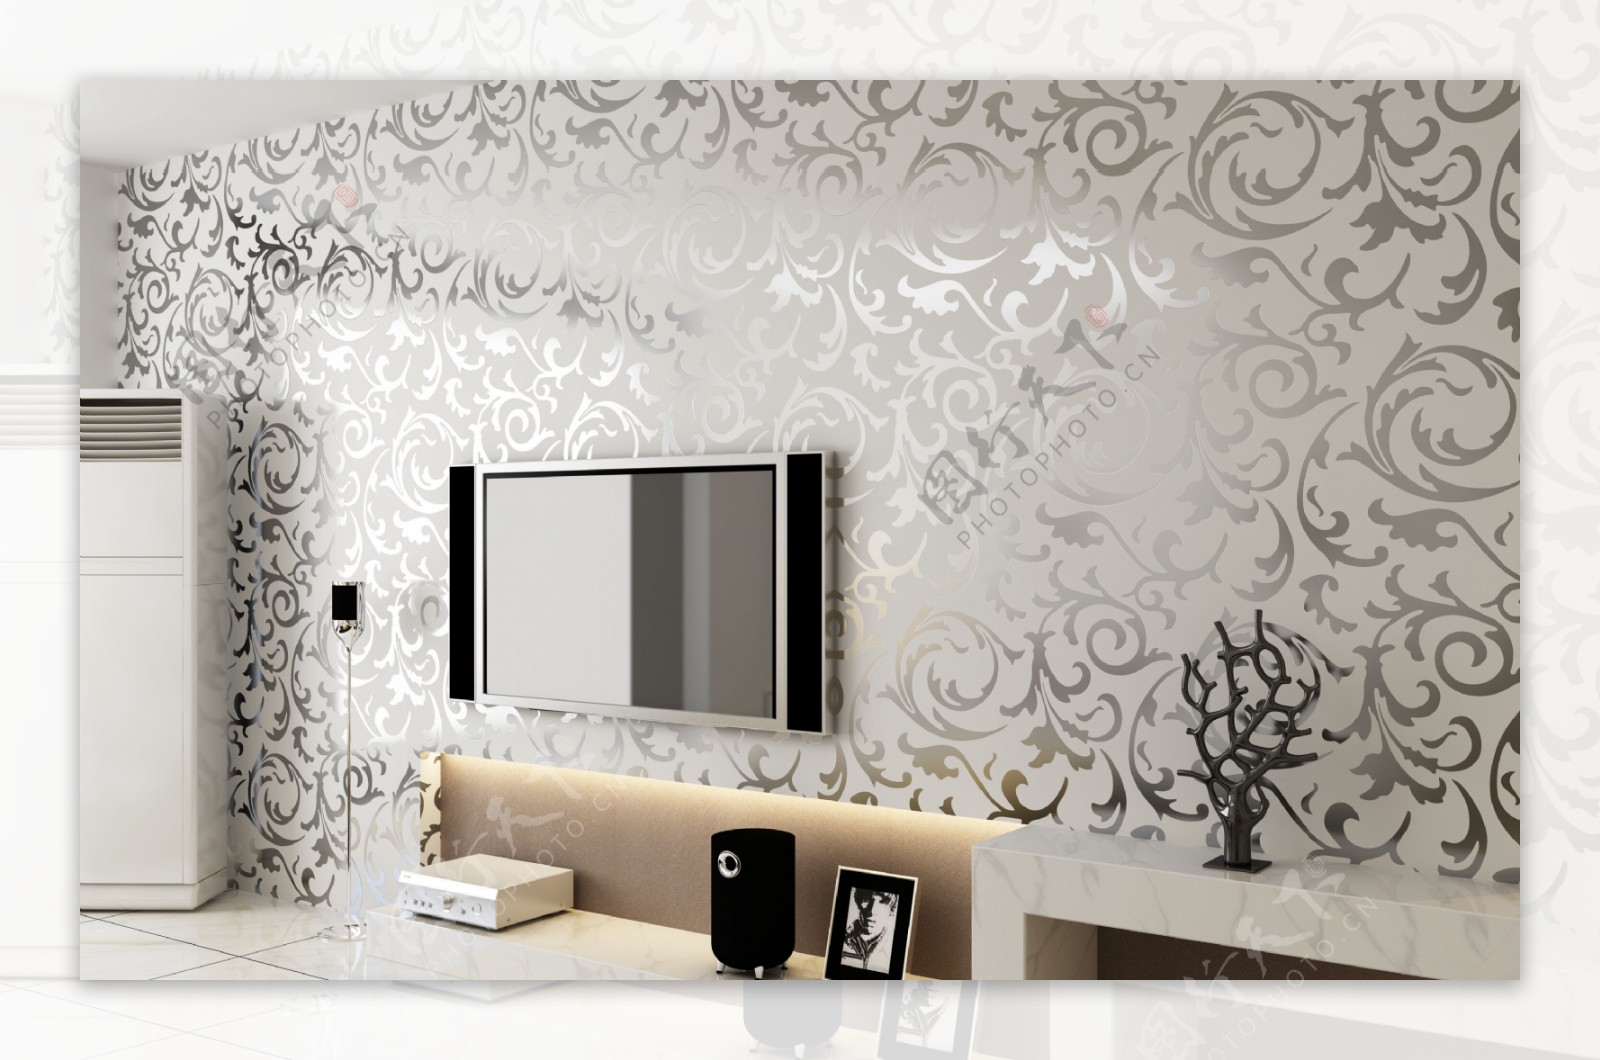 室内设计壁纸设计效果图